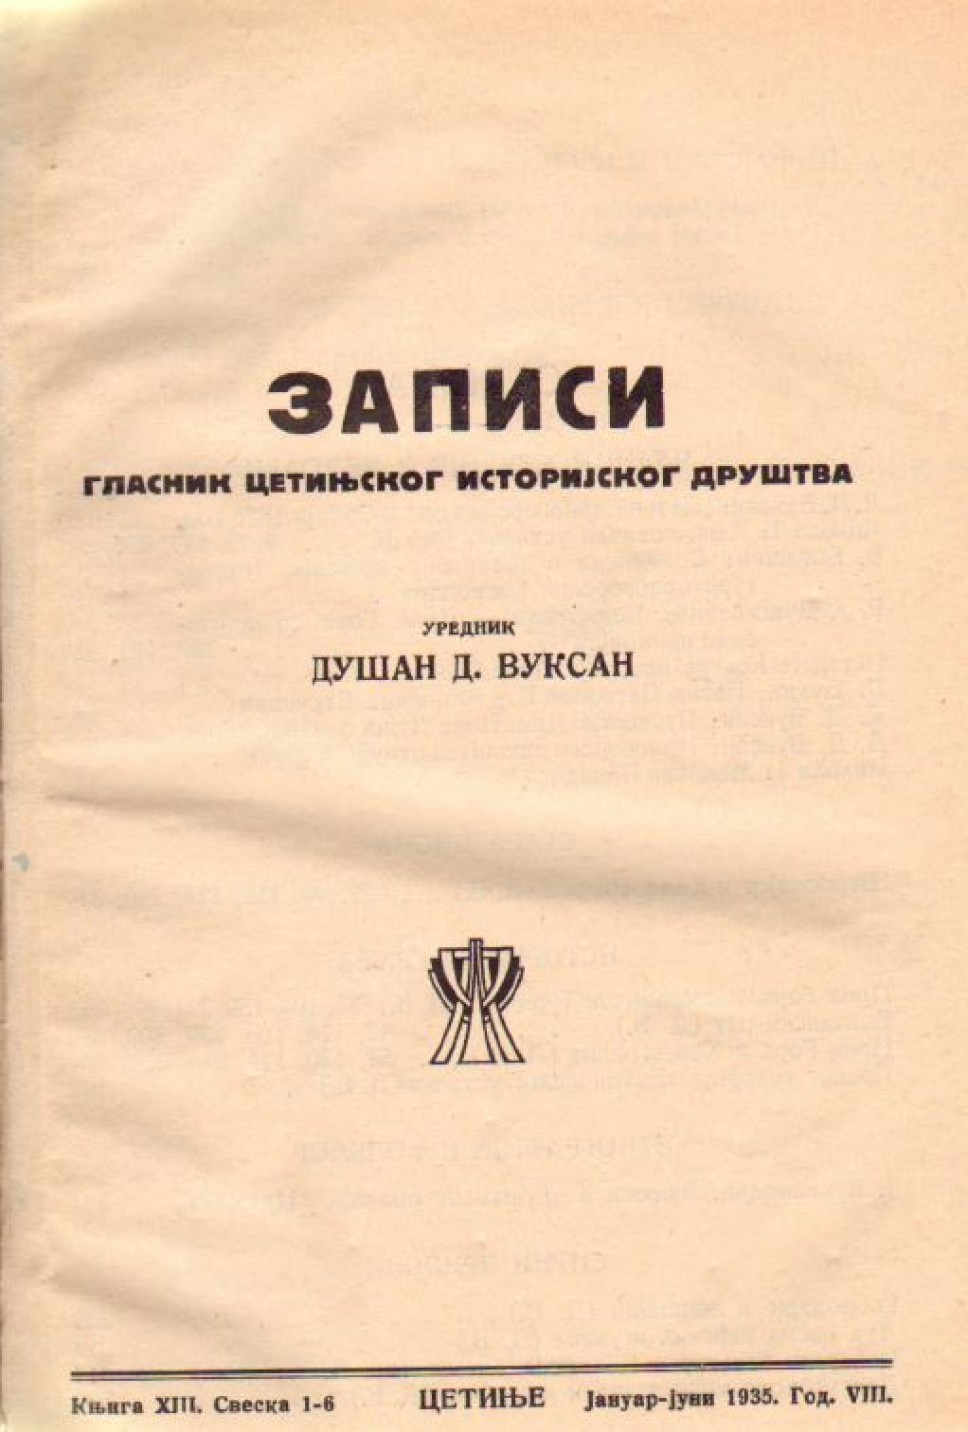 Zapisi 1935